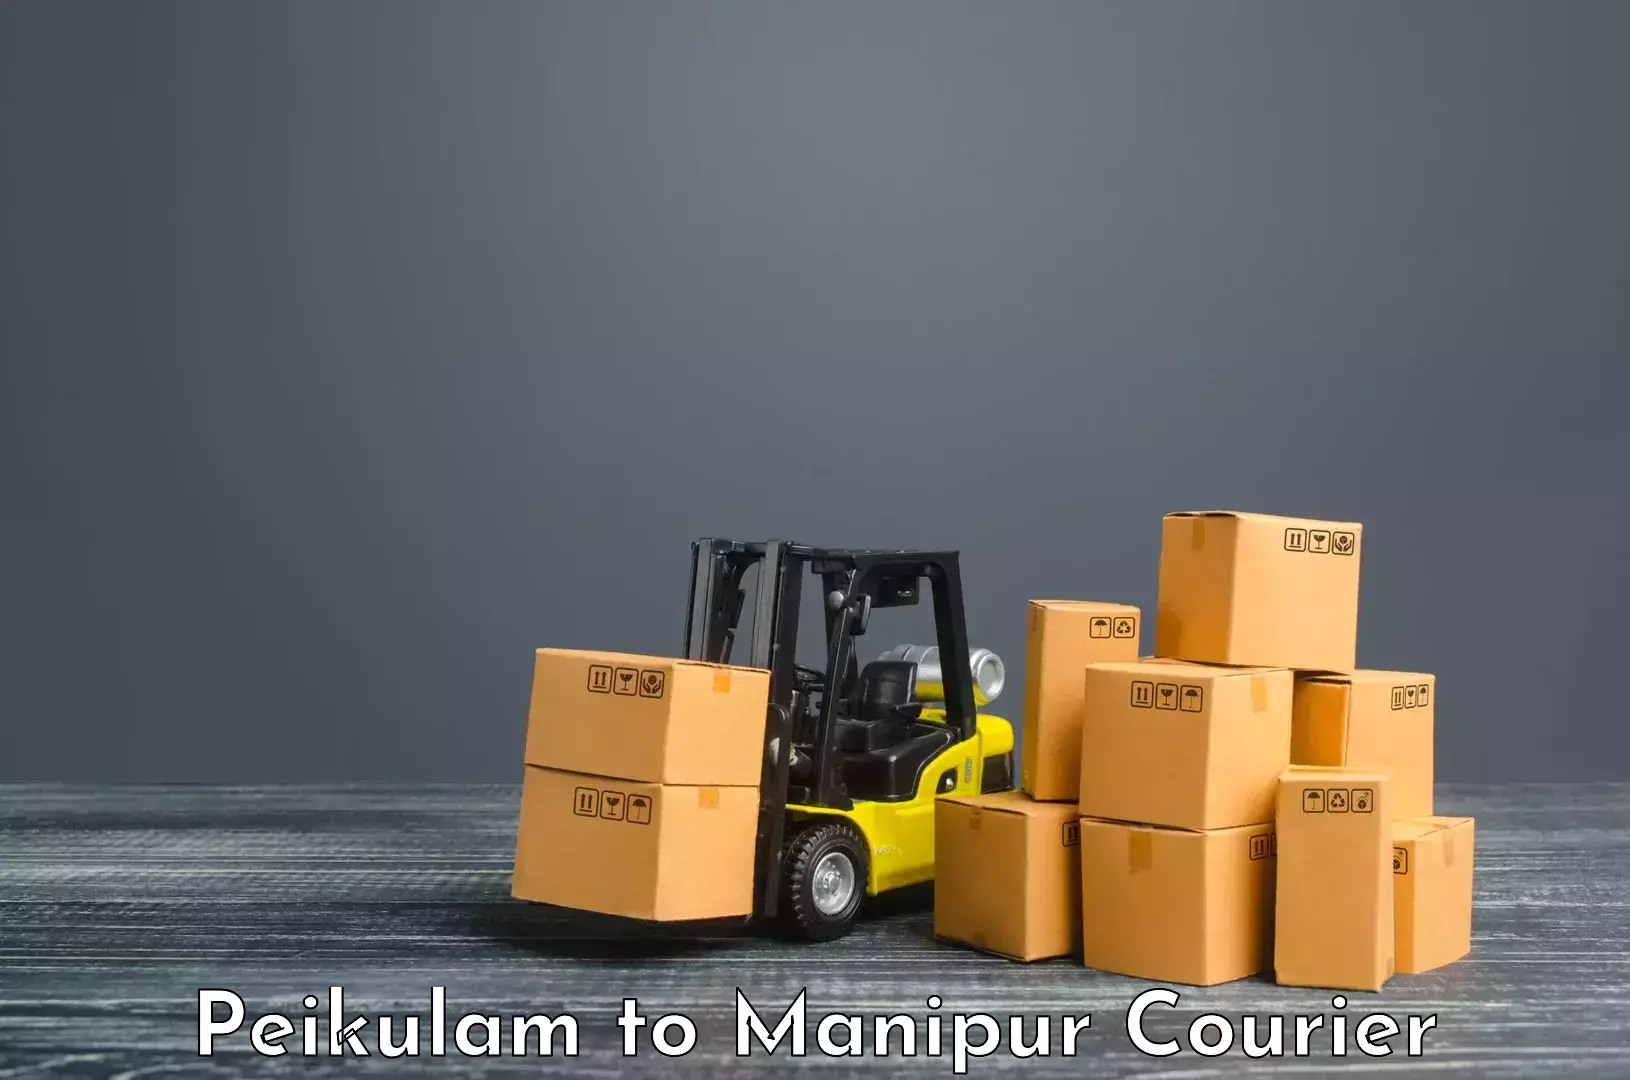 Multi-national courier services Peikulam to Tadubi